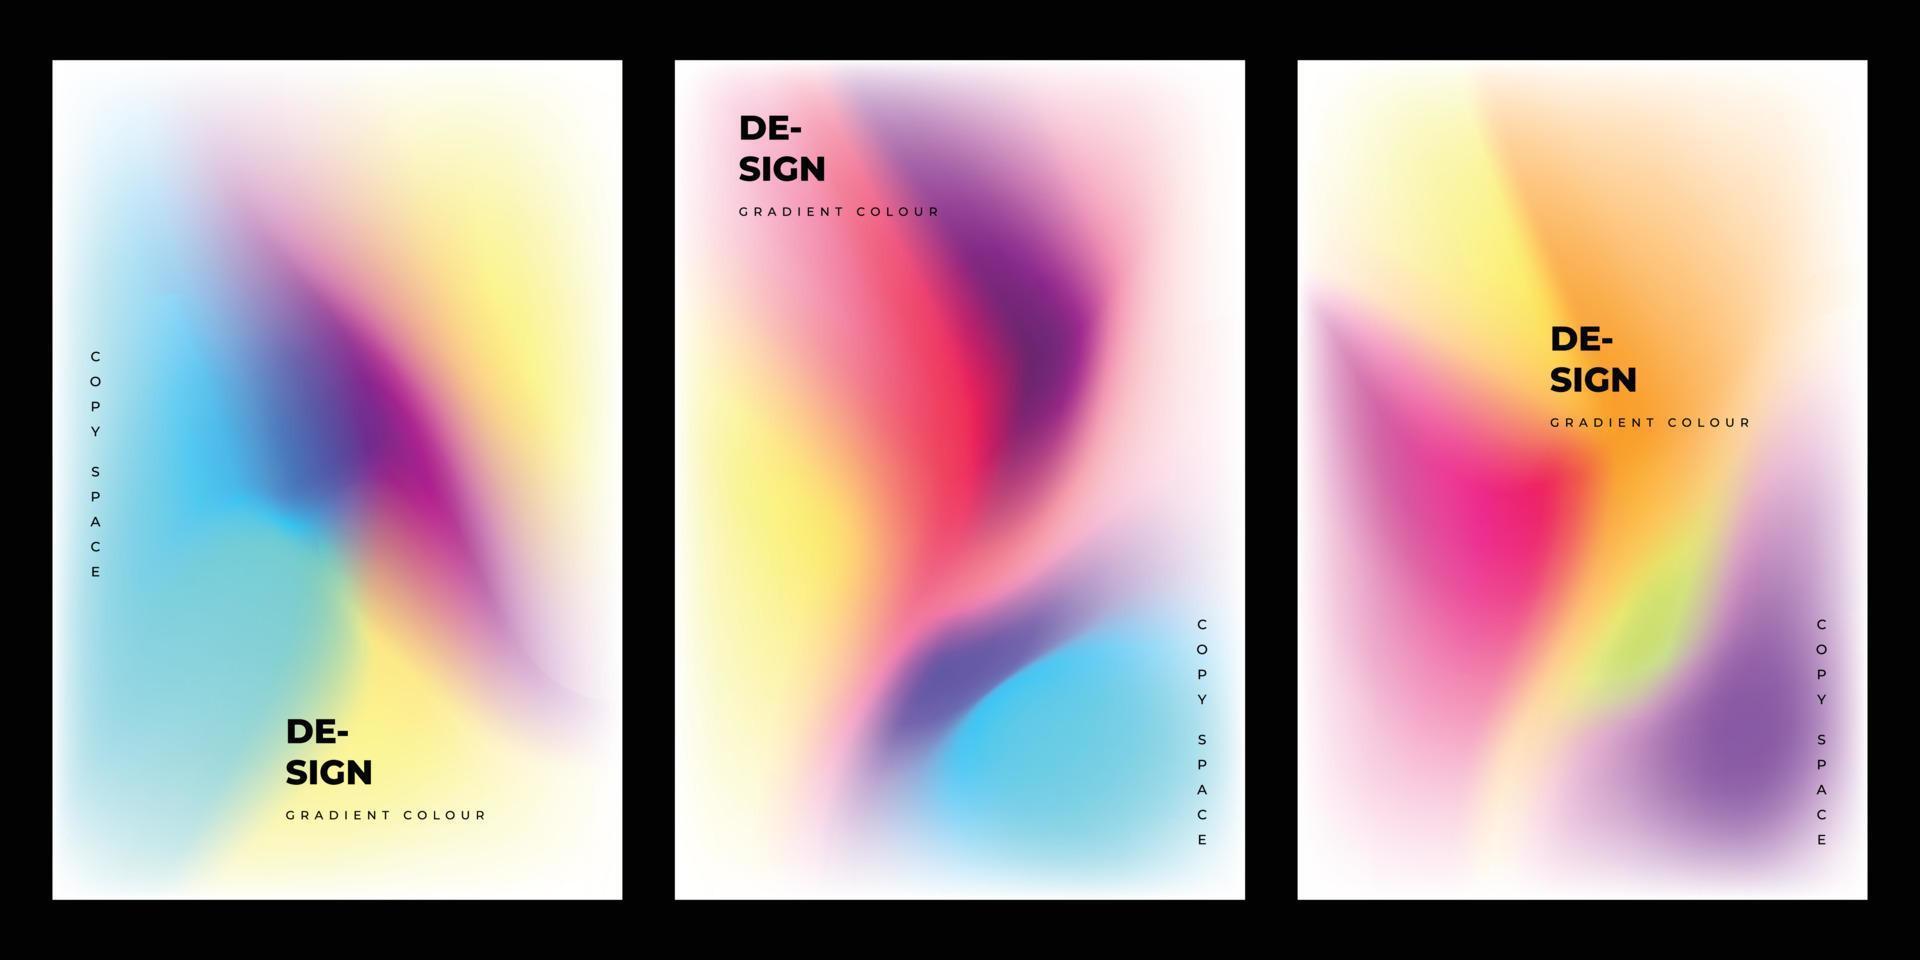 abstract kleurrijk helling maas brochure ontwerp kopiëren ruimte reeks vector